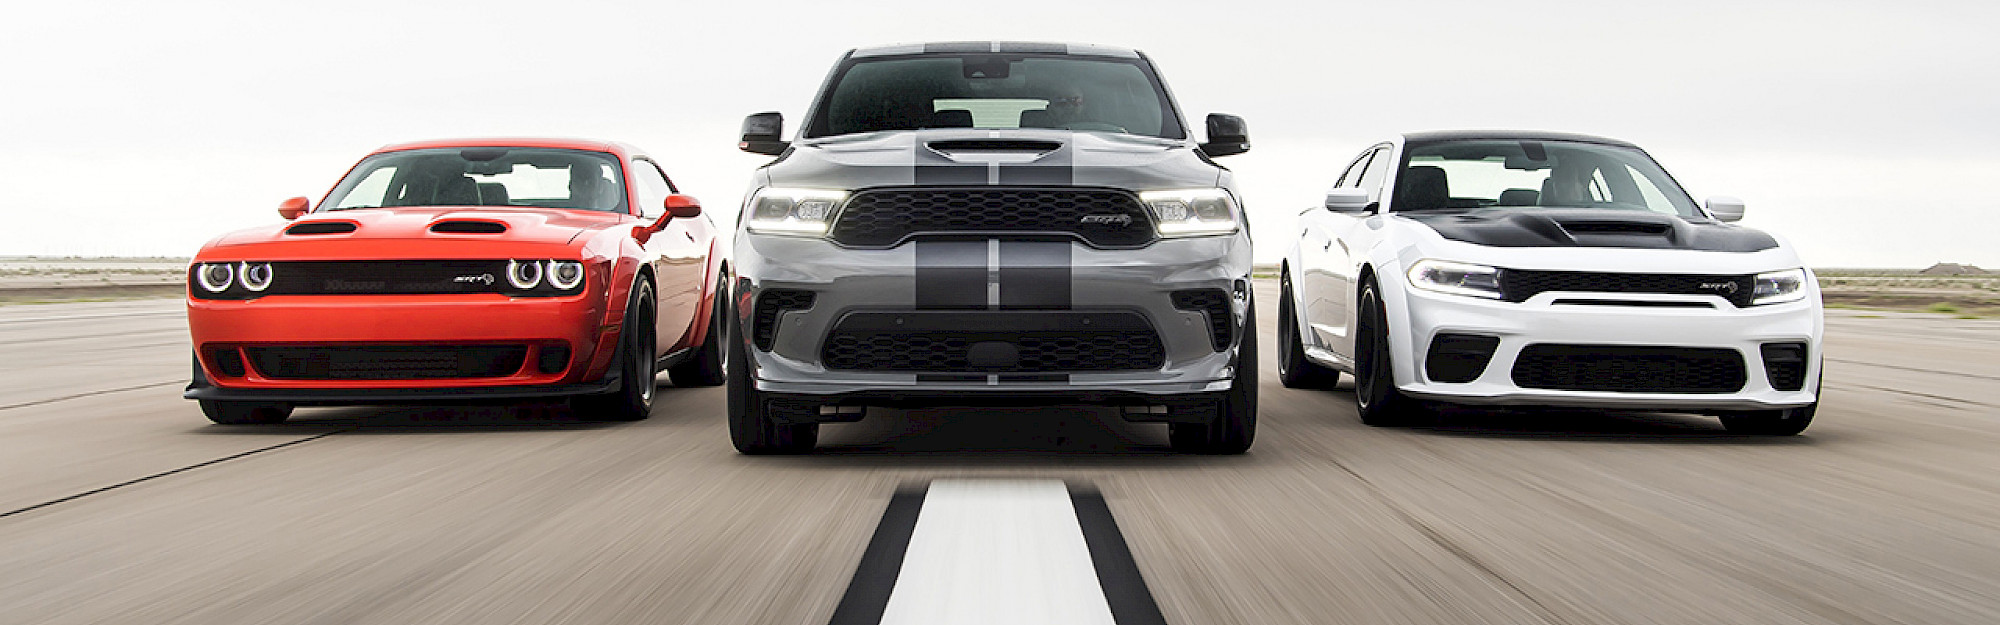 Dodge Challenger, Durango és Charger modellek haladnak a versenypályán